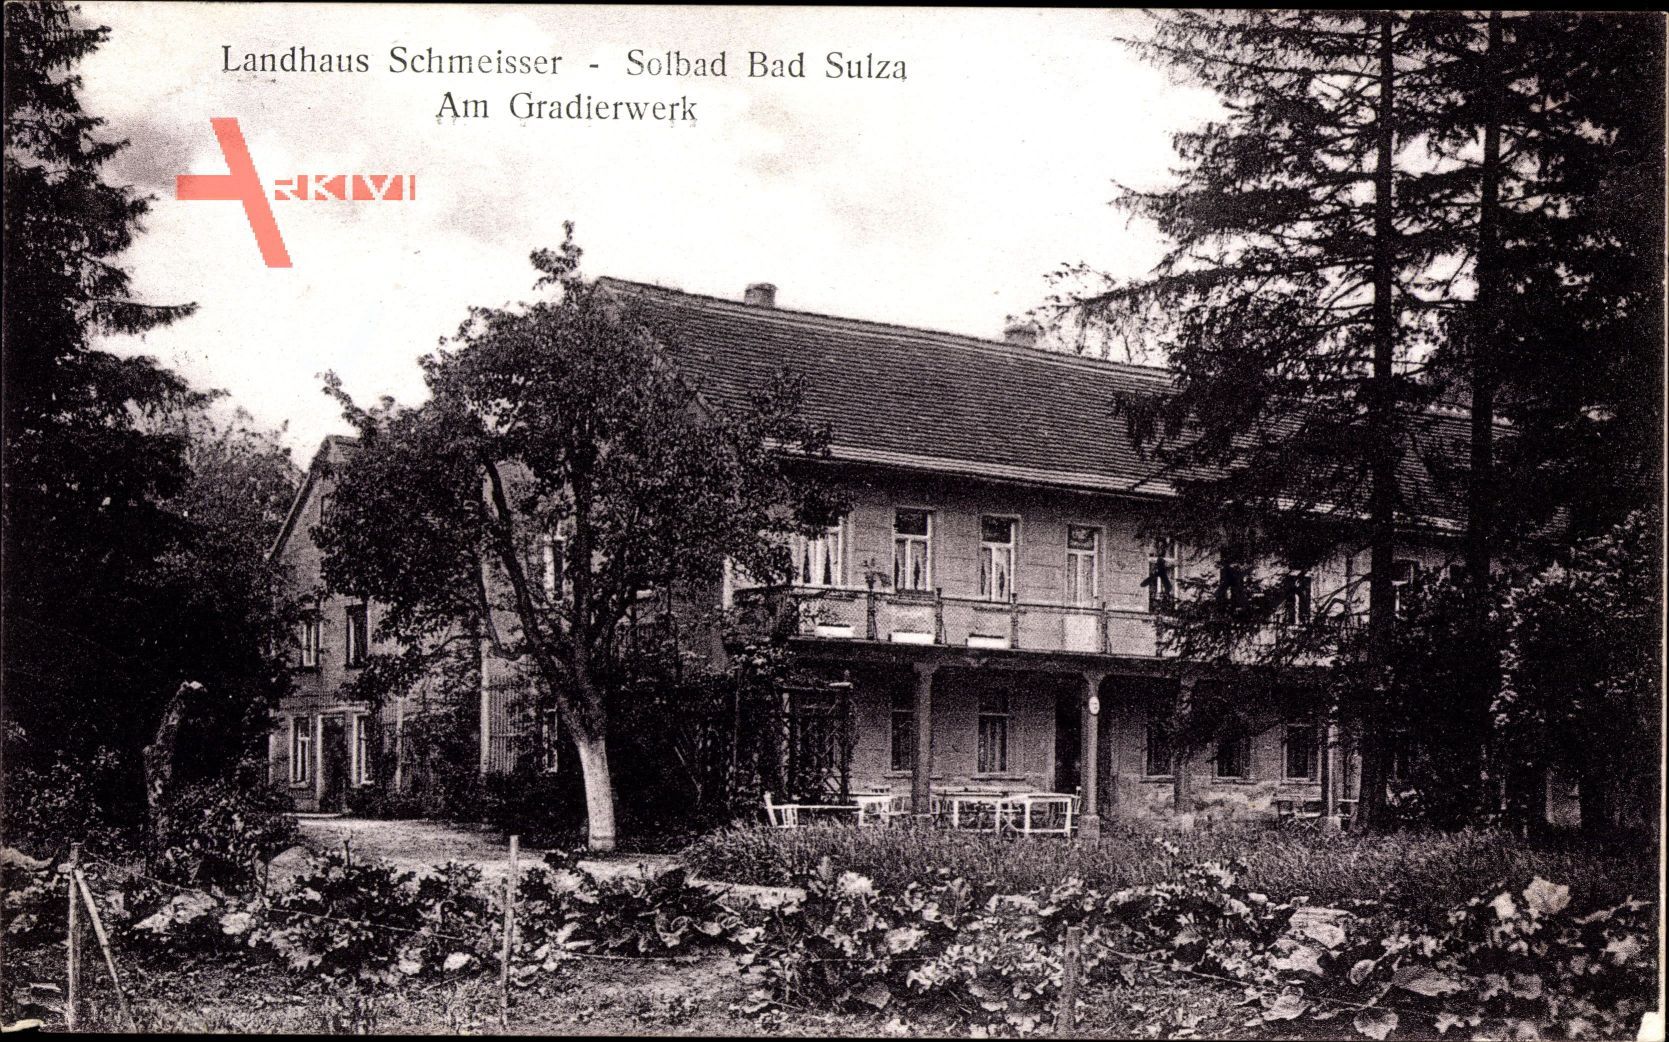 Bad Sulza im Weimarer Land Thüringen, Landhaus Schmeisser, am Gradierwerk